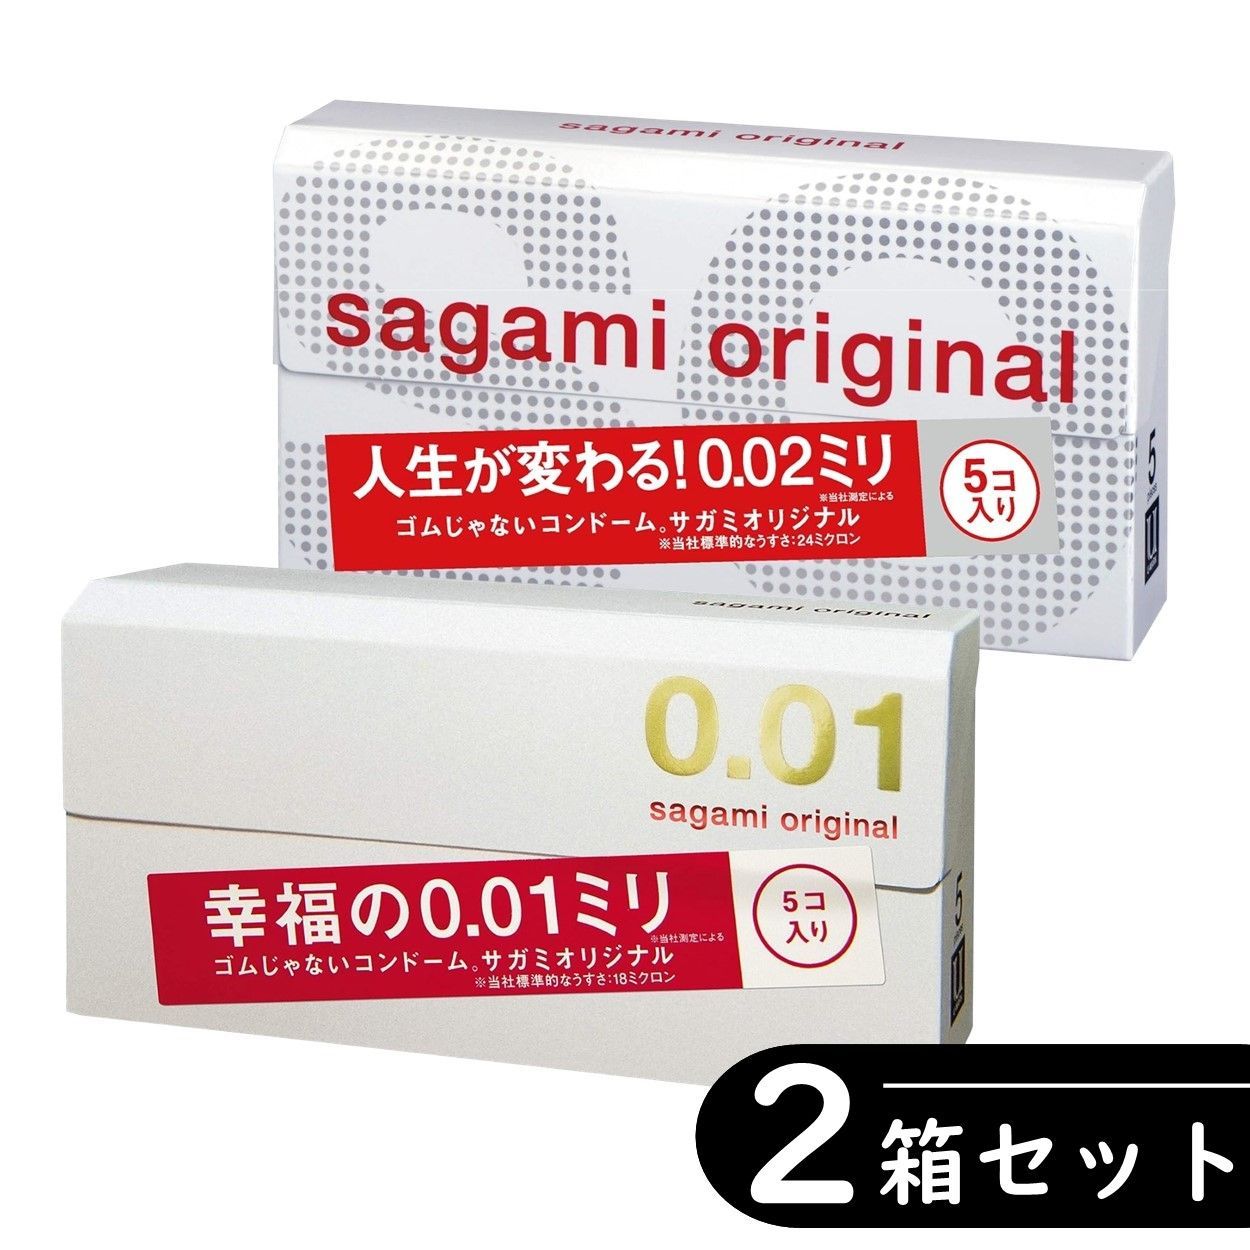 サガミオリジナル 002 コンドーム 5個入×2箱セット - 衛生日用品